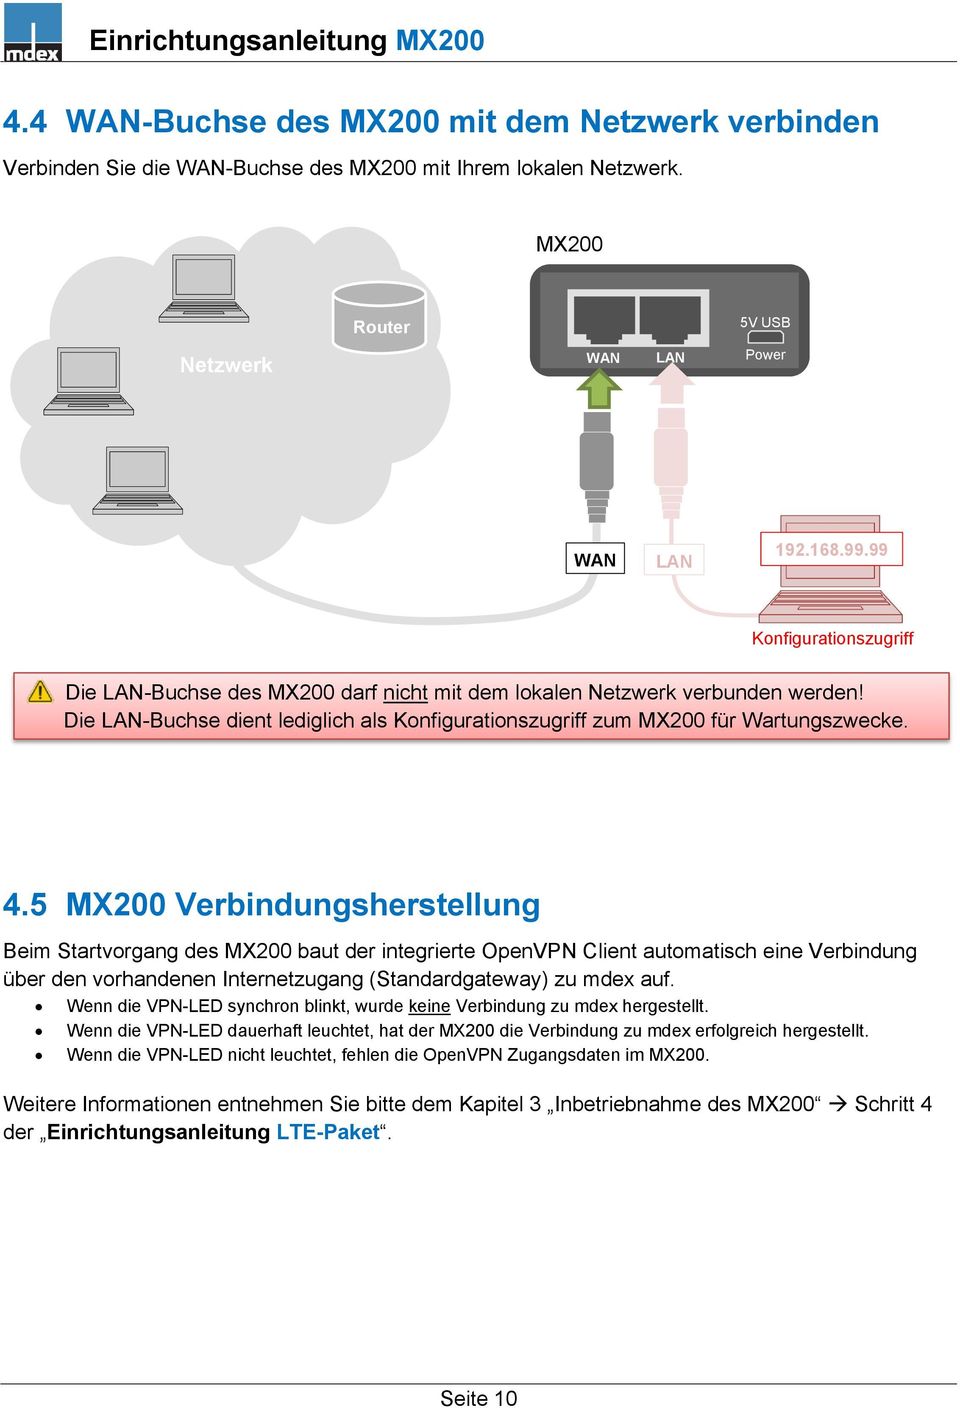 4.5 MX200 Verbindungsherstellung Beim Startvorgang des MX200 baut der integrierte OpenVPN Client automatisch eine Verbindung über den vorhandenen Internetzugang (Standardgateway) zu mdex auf.